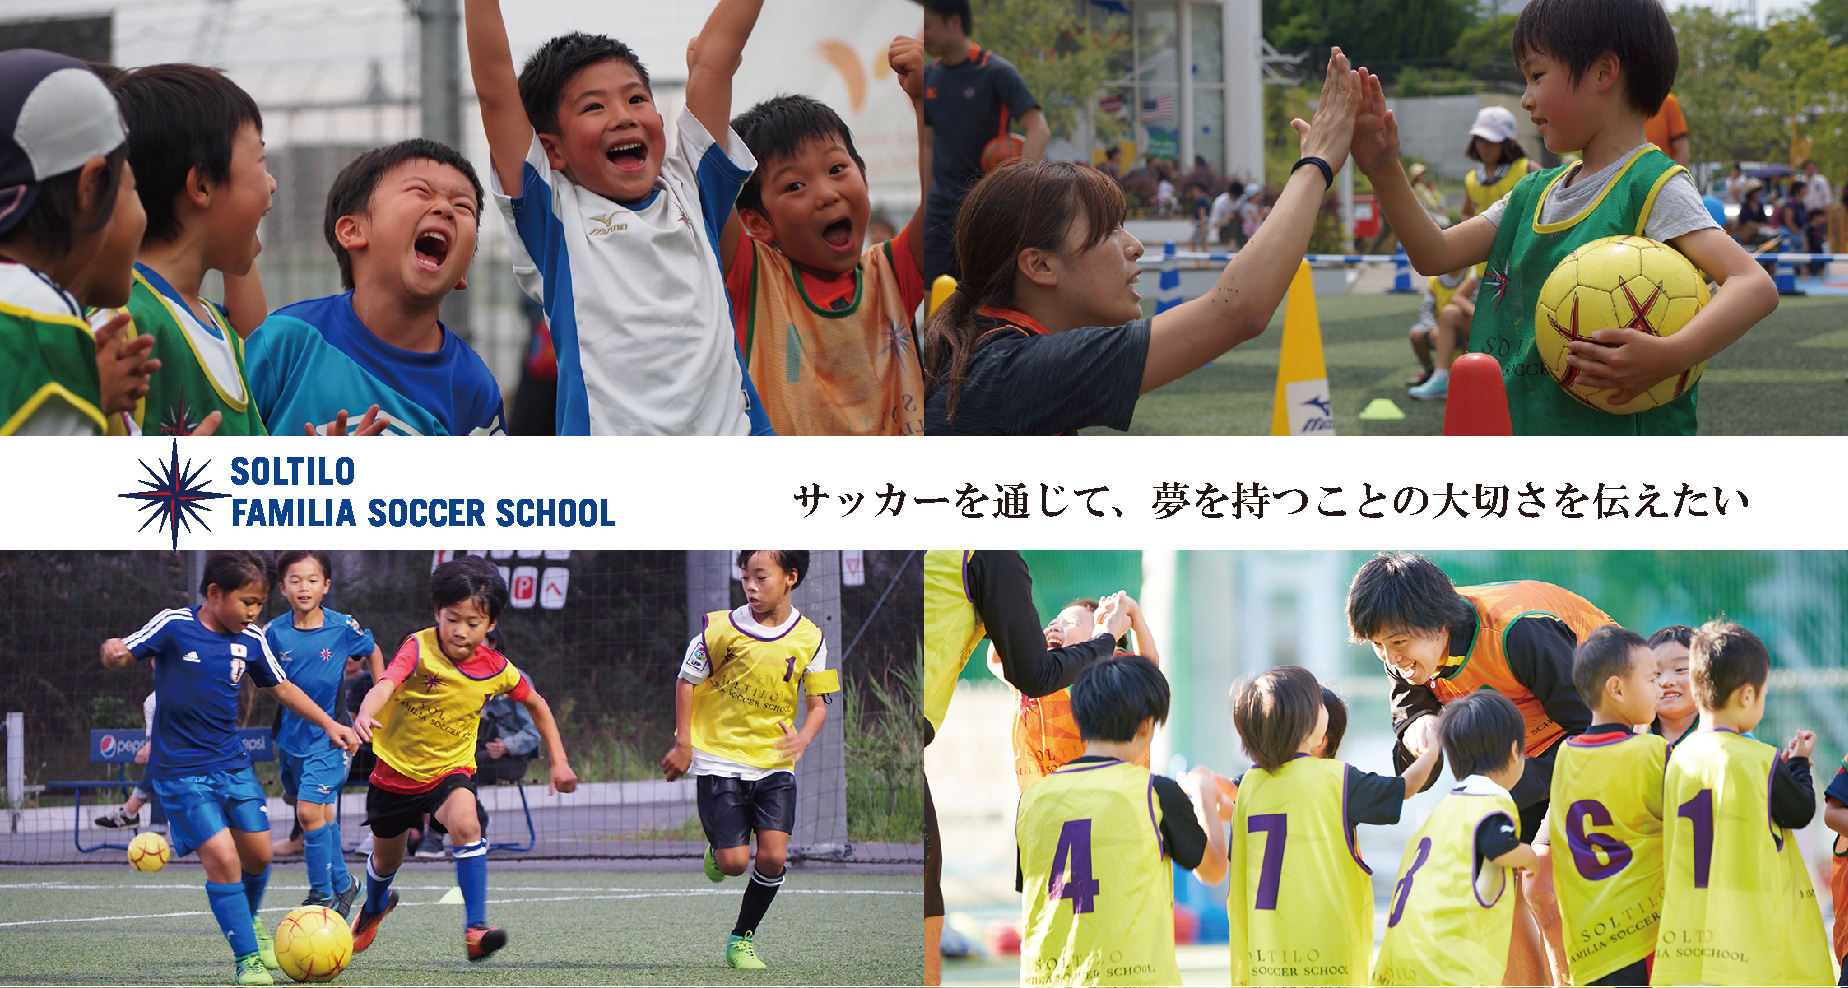 本田圭佑プロデュースのサッカースクール ソルティーロ が静岡県に初進出 焼津校が4月開校 サッカーキング